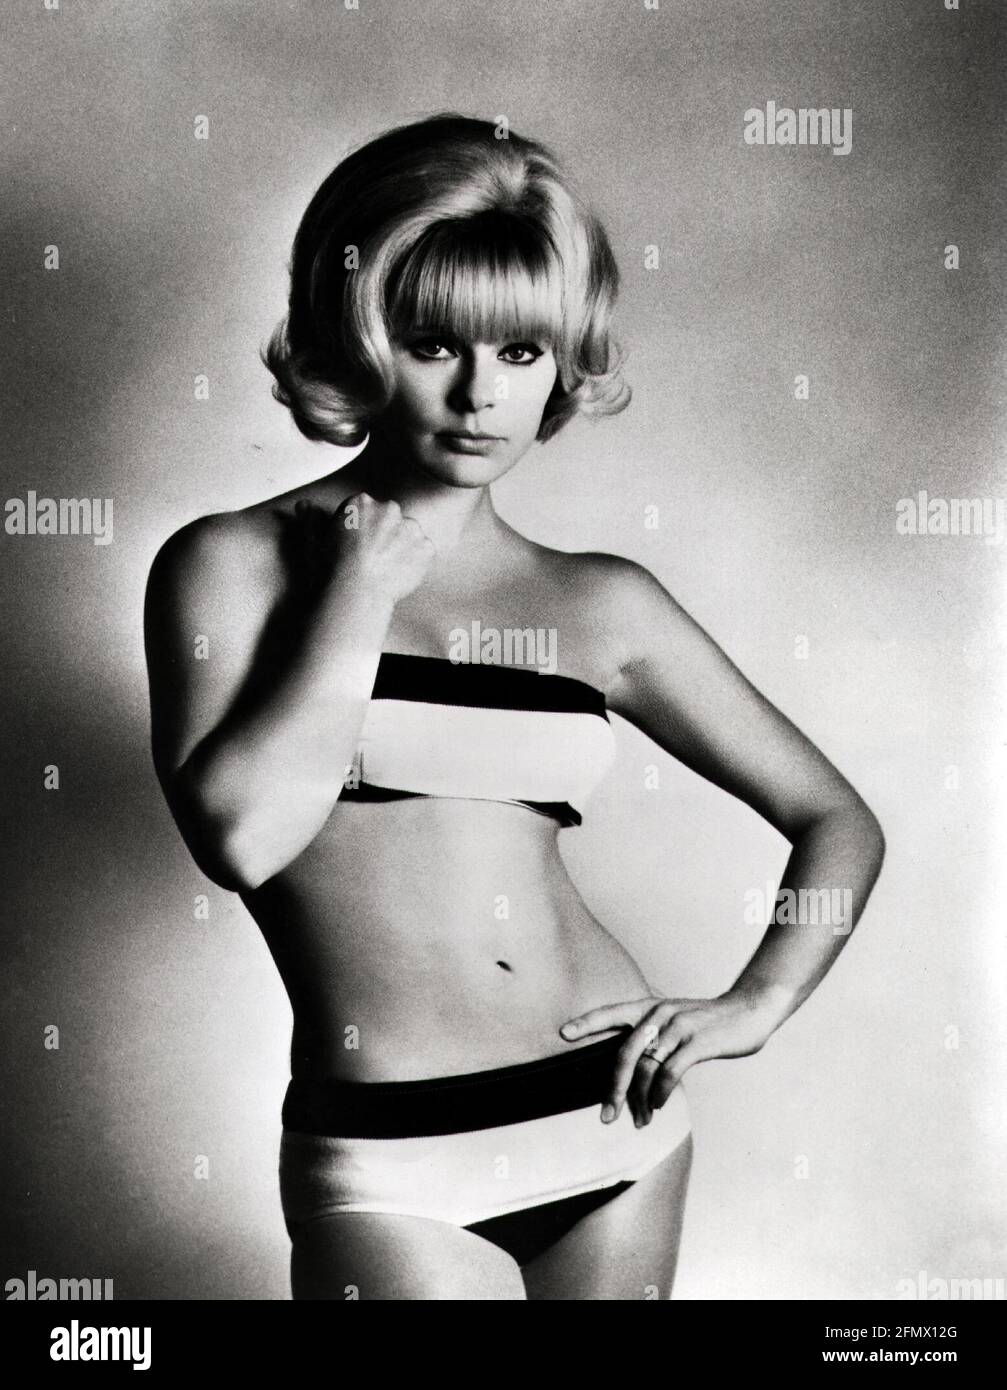 Sommer, Elke, * 5.11.1940, actrice allemande, mi-longueur, Portant bikini, studio, années 1960, DROITS-SUPPLÉMENTAIRES-AUTORISATION-INFO-NON-DISPONIBLE Banque D'Images